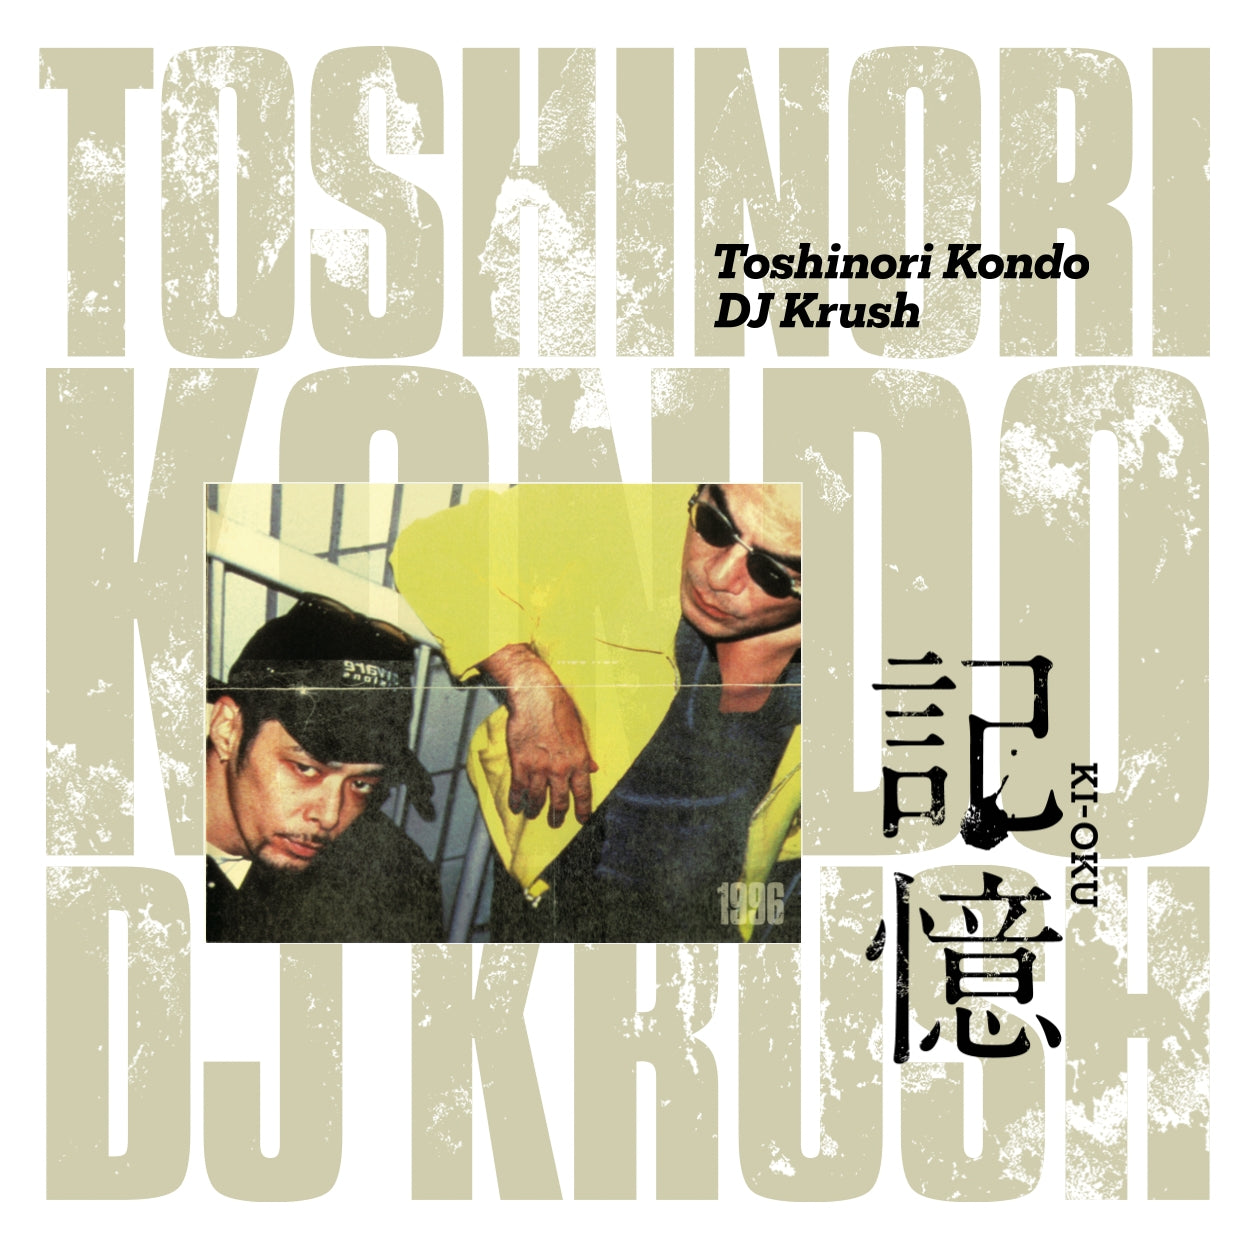 Dj Krush X Toshinori Kondo - Ki-oku Memorial Release For The 3rd